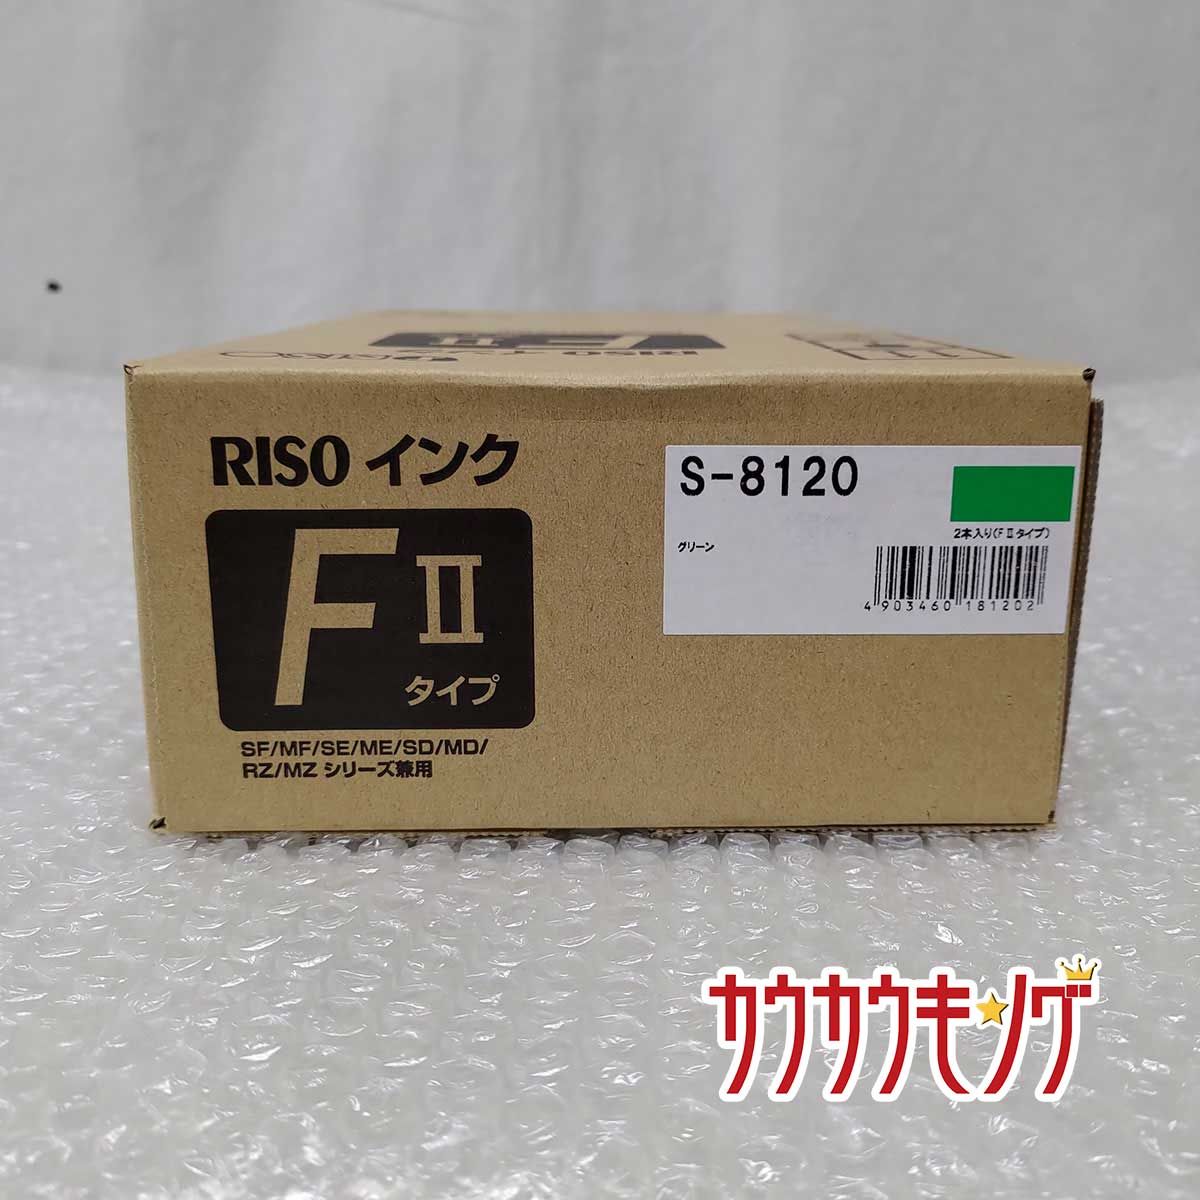 【未使用】純正 RISO リソー インク FIIタイプ S-8120 1000ml 2本入り グリーン トナー 製造年月日2020年5月11日